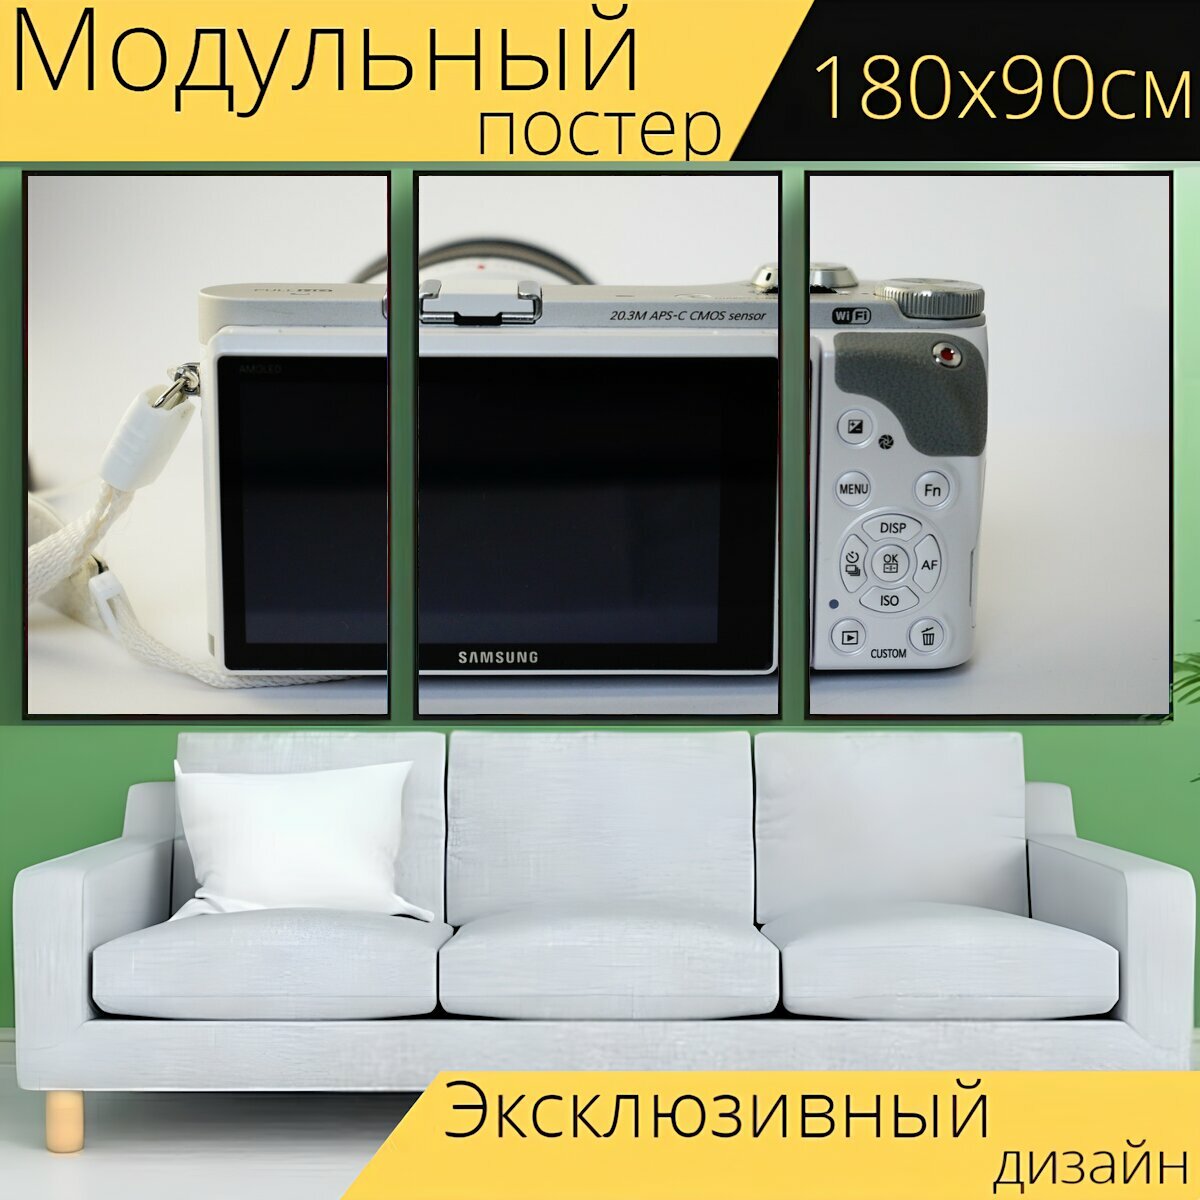 Модульный постер "Отображать, монитор, камера" 180 x 90 см. для интерьера